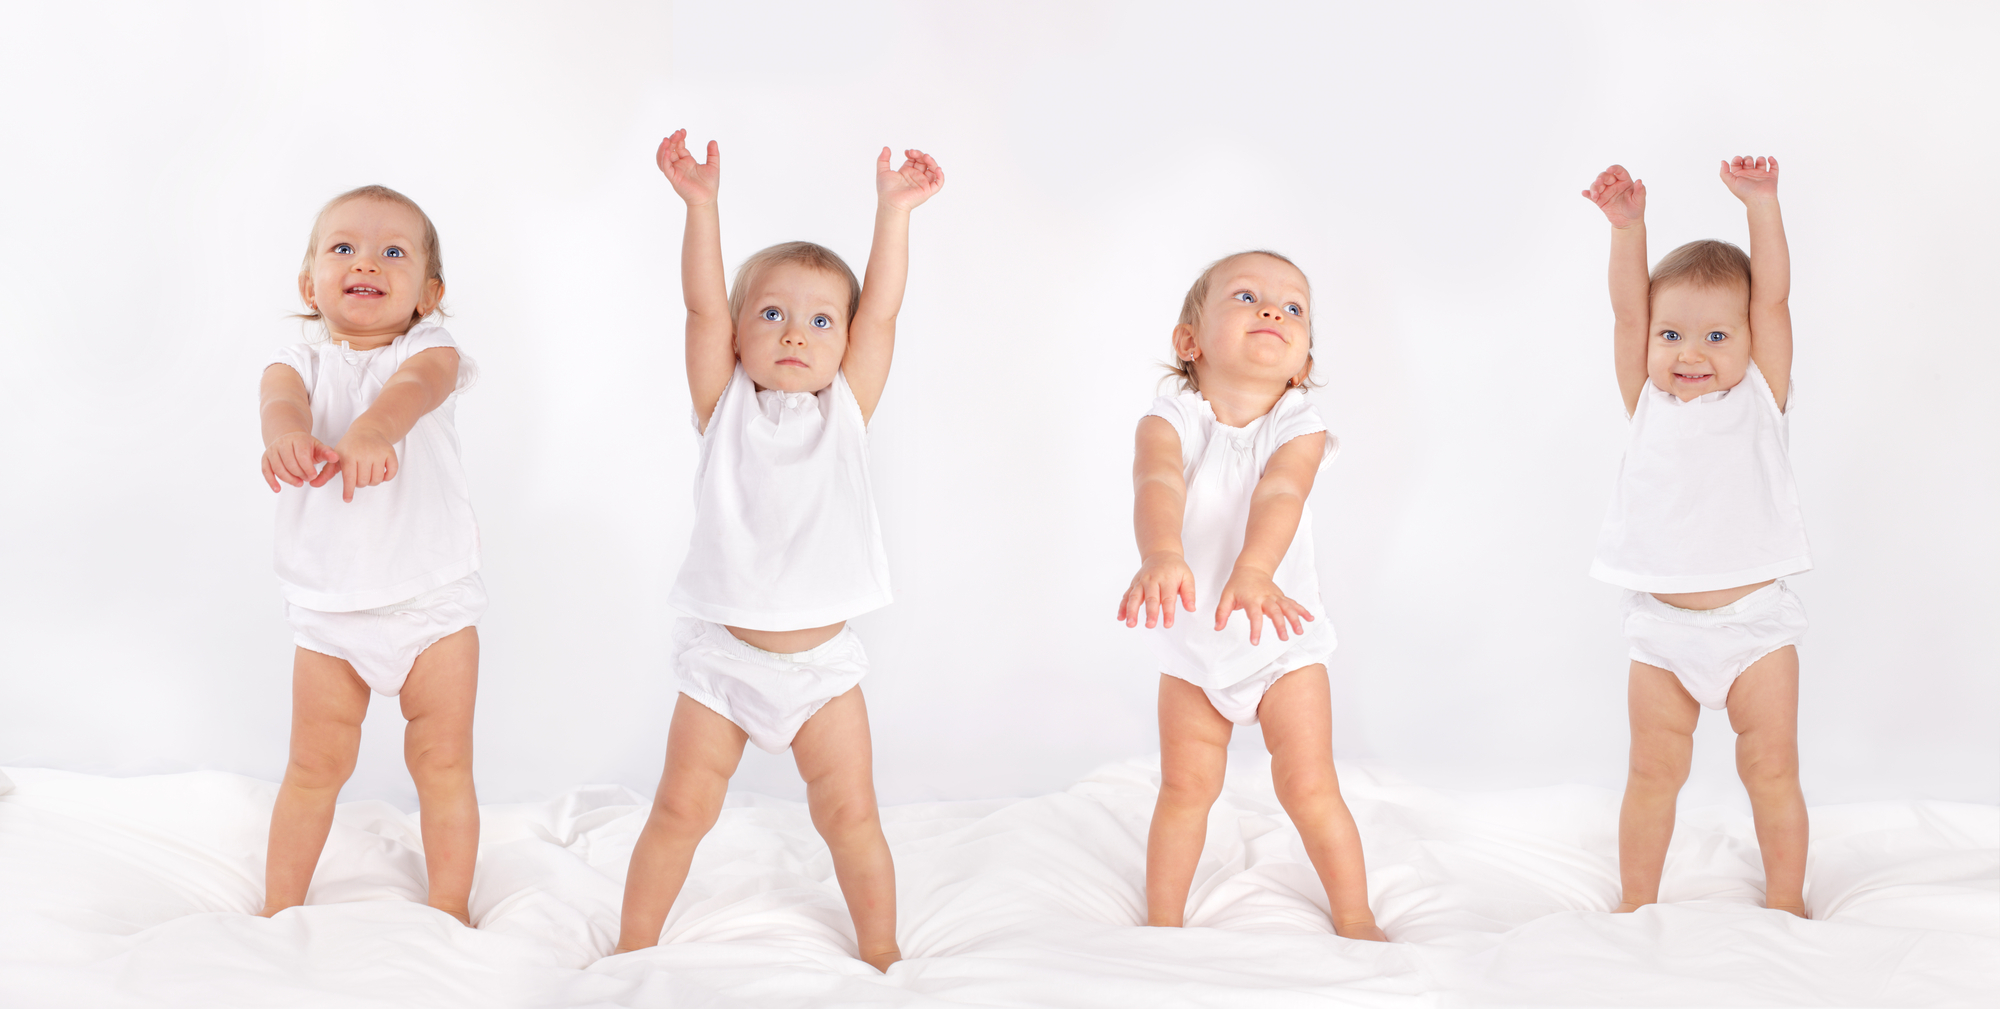 Le guide ultime pour choisir le meilleur tapis de motricité pour votre bébé  - Rouler & Bouler - Le tapis d'éveil et de motricité pour bébé